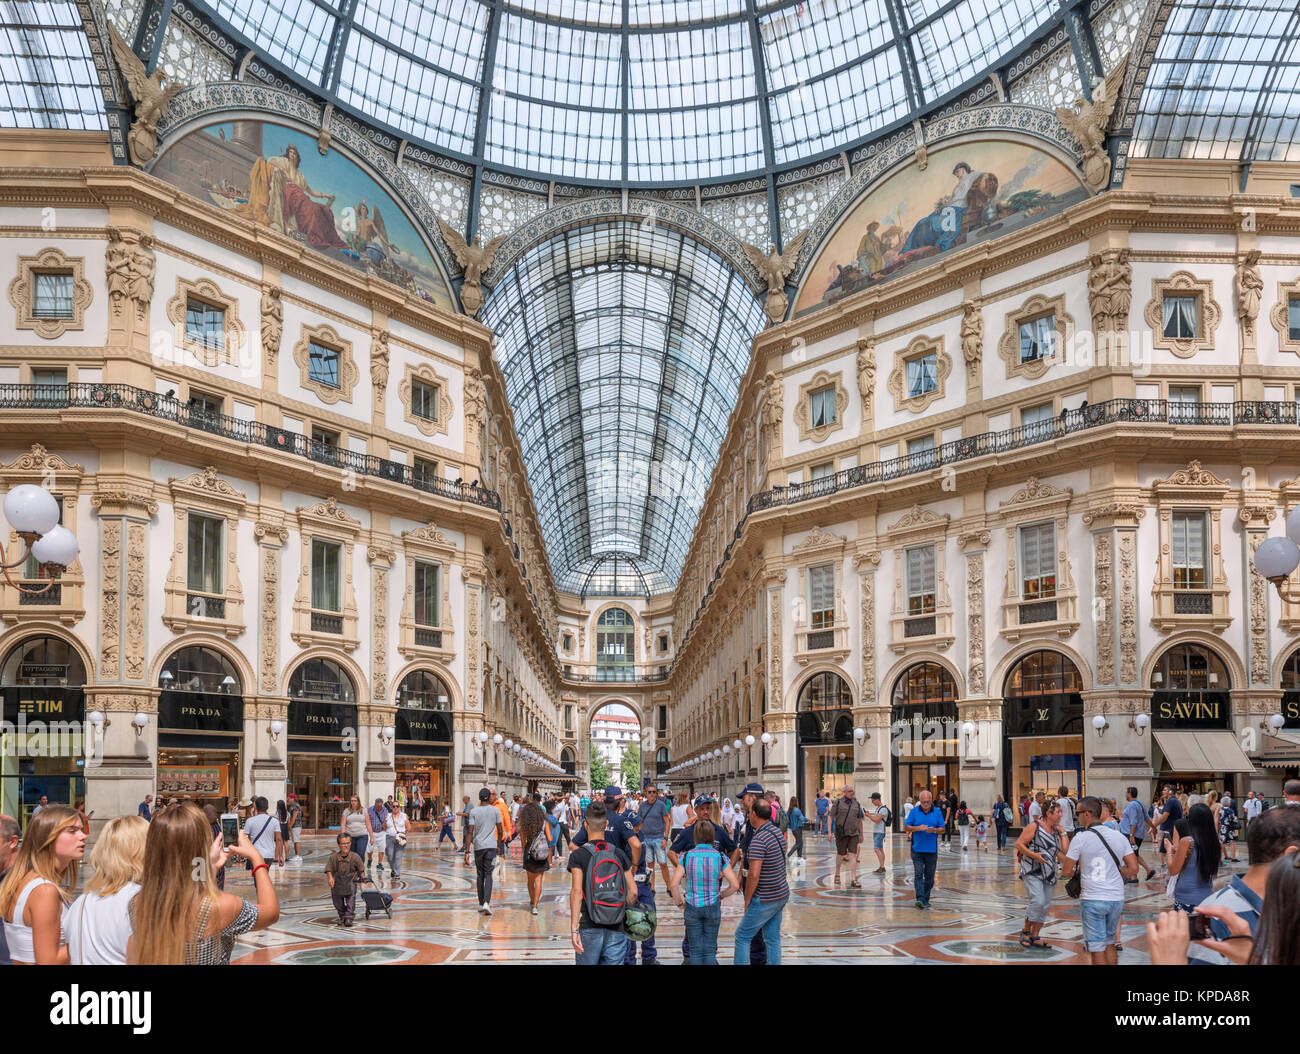 Negozi in Galleria Vittorio Emanuele II, uno storico centro commerciale per lo shopping nel centro della città di Milano, Lombardia, Italia Foto Stock